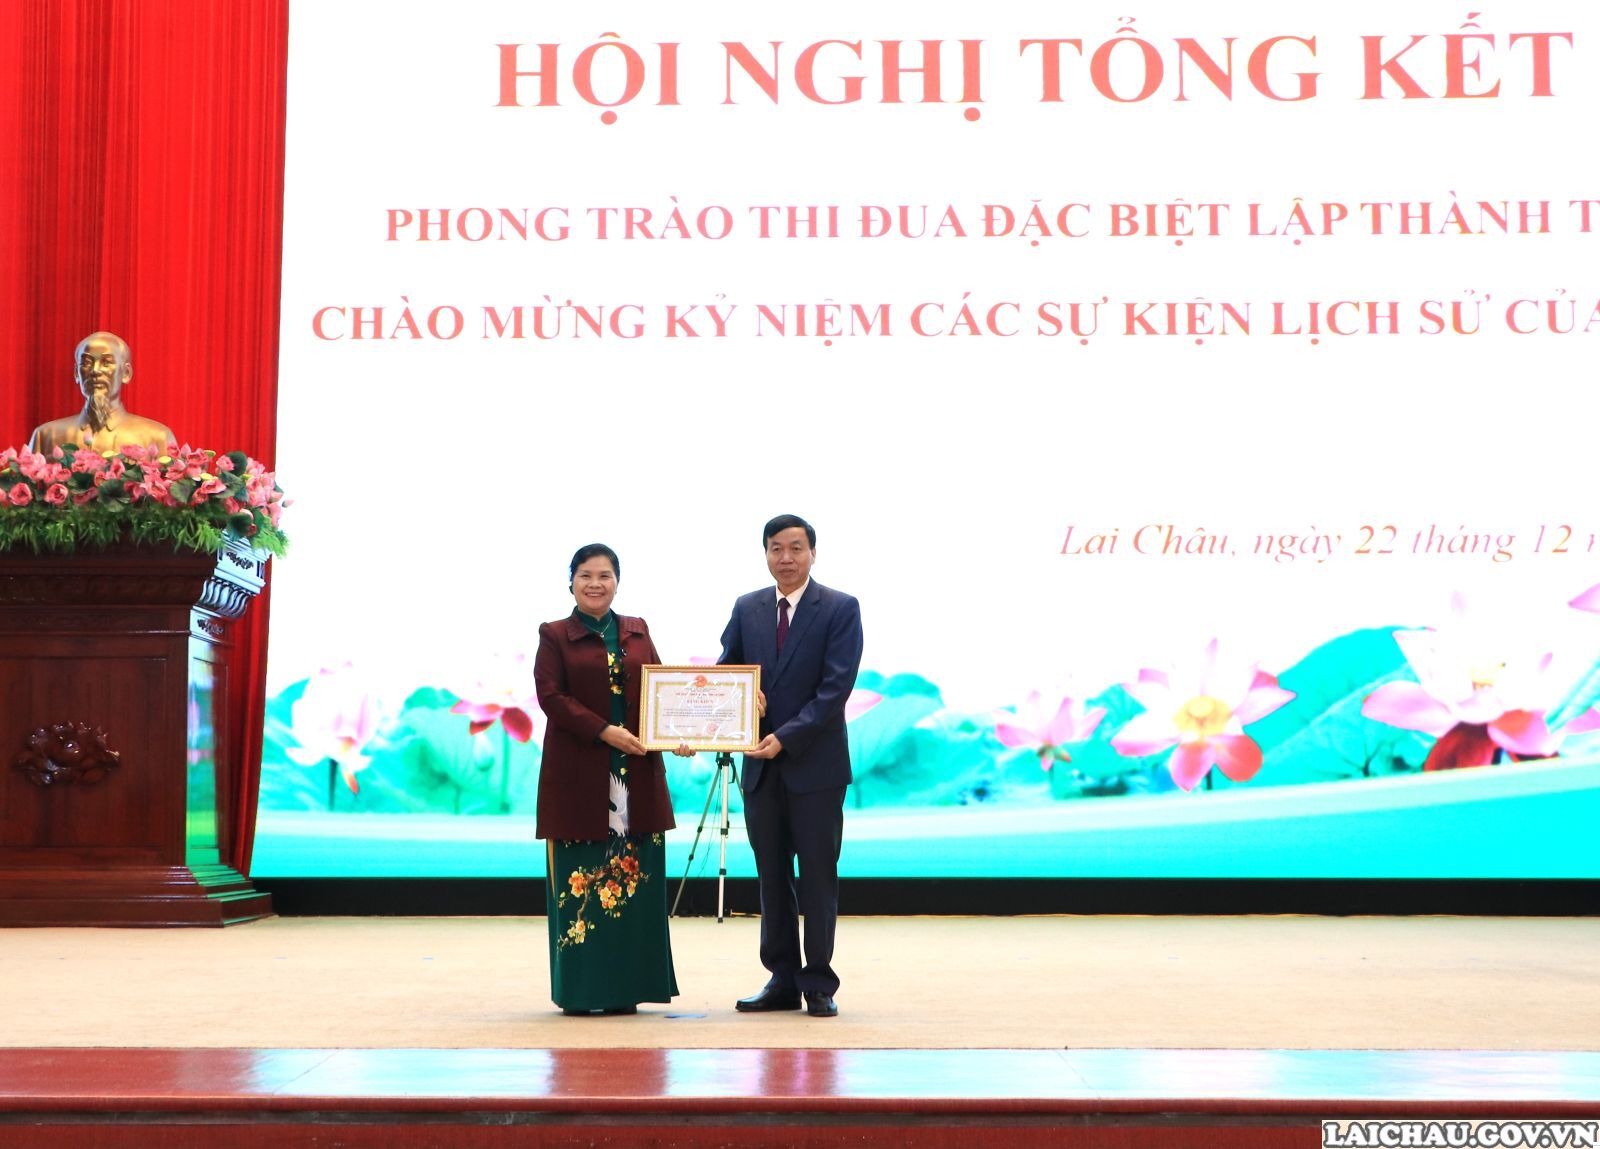 Lai Châu: Tổng kết phong trào thi đua đặc biệt lập thành tích chào mừng kỷ niệm các sự kiện lịch sử- Ảnh 6.